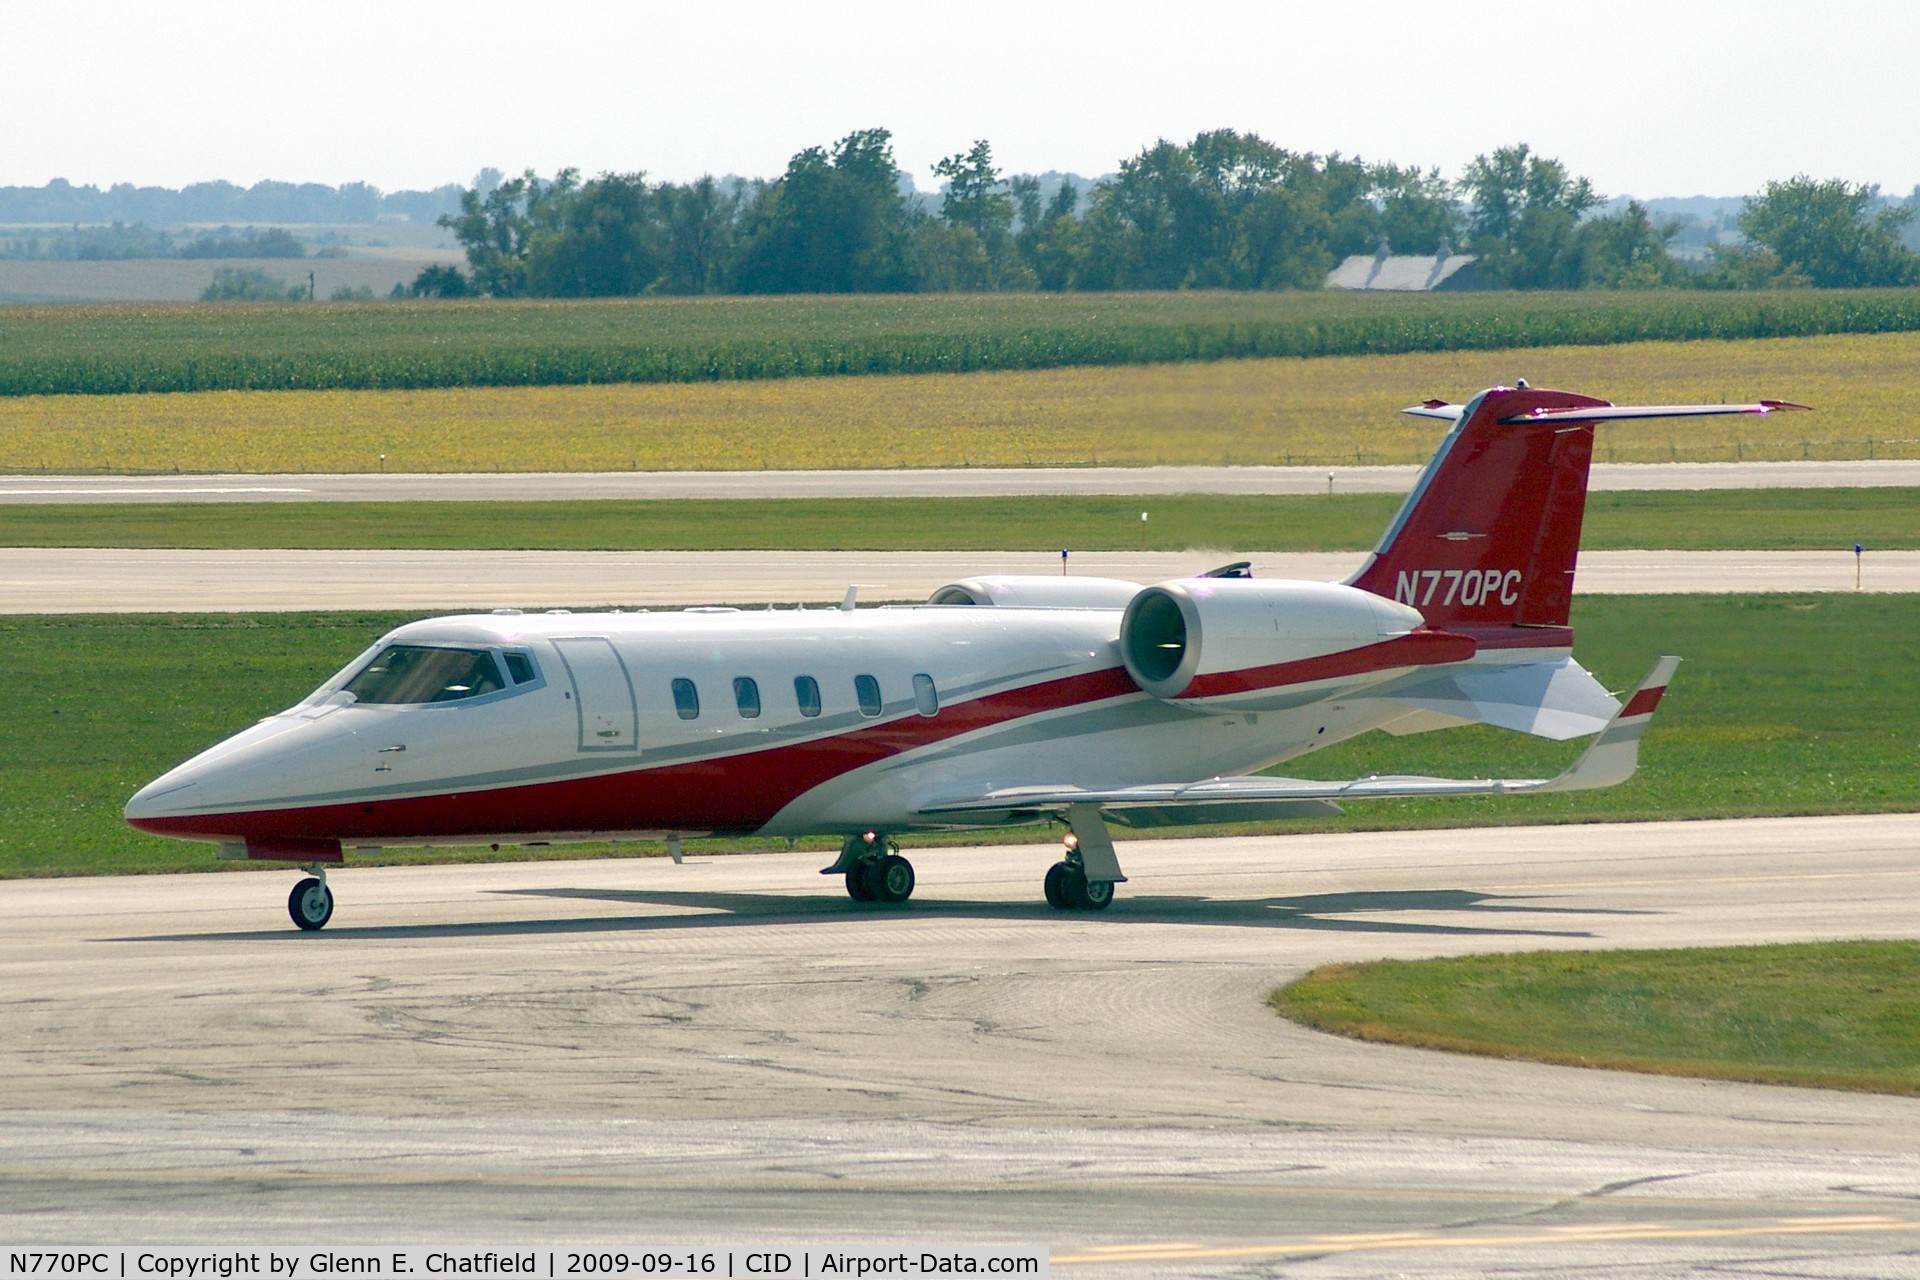 N770PC, 2007 Learjet 60 C/N 318, Taxiing to Landmark FBO, after landing runway 27